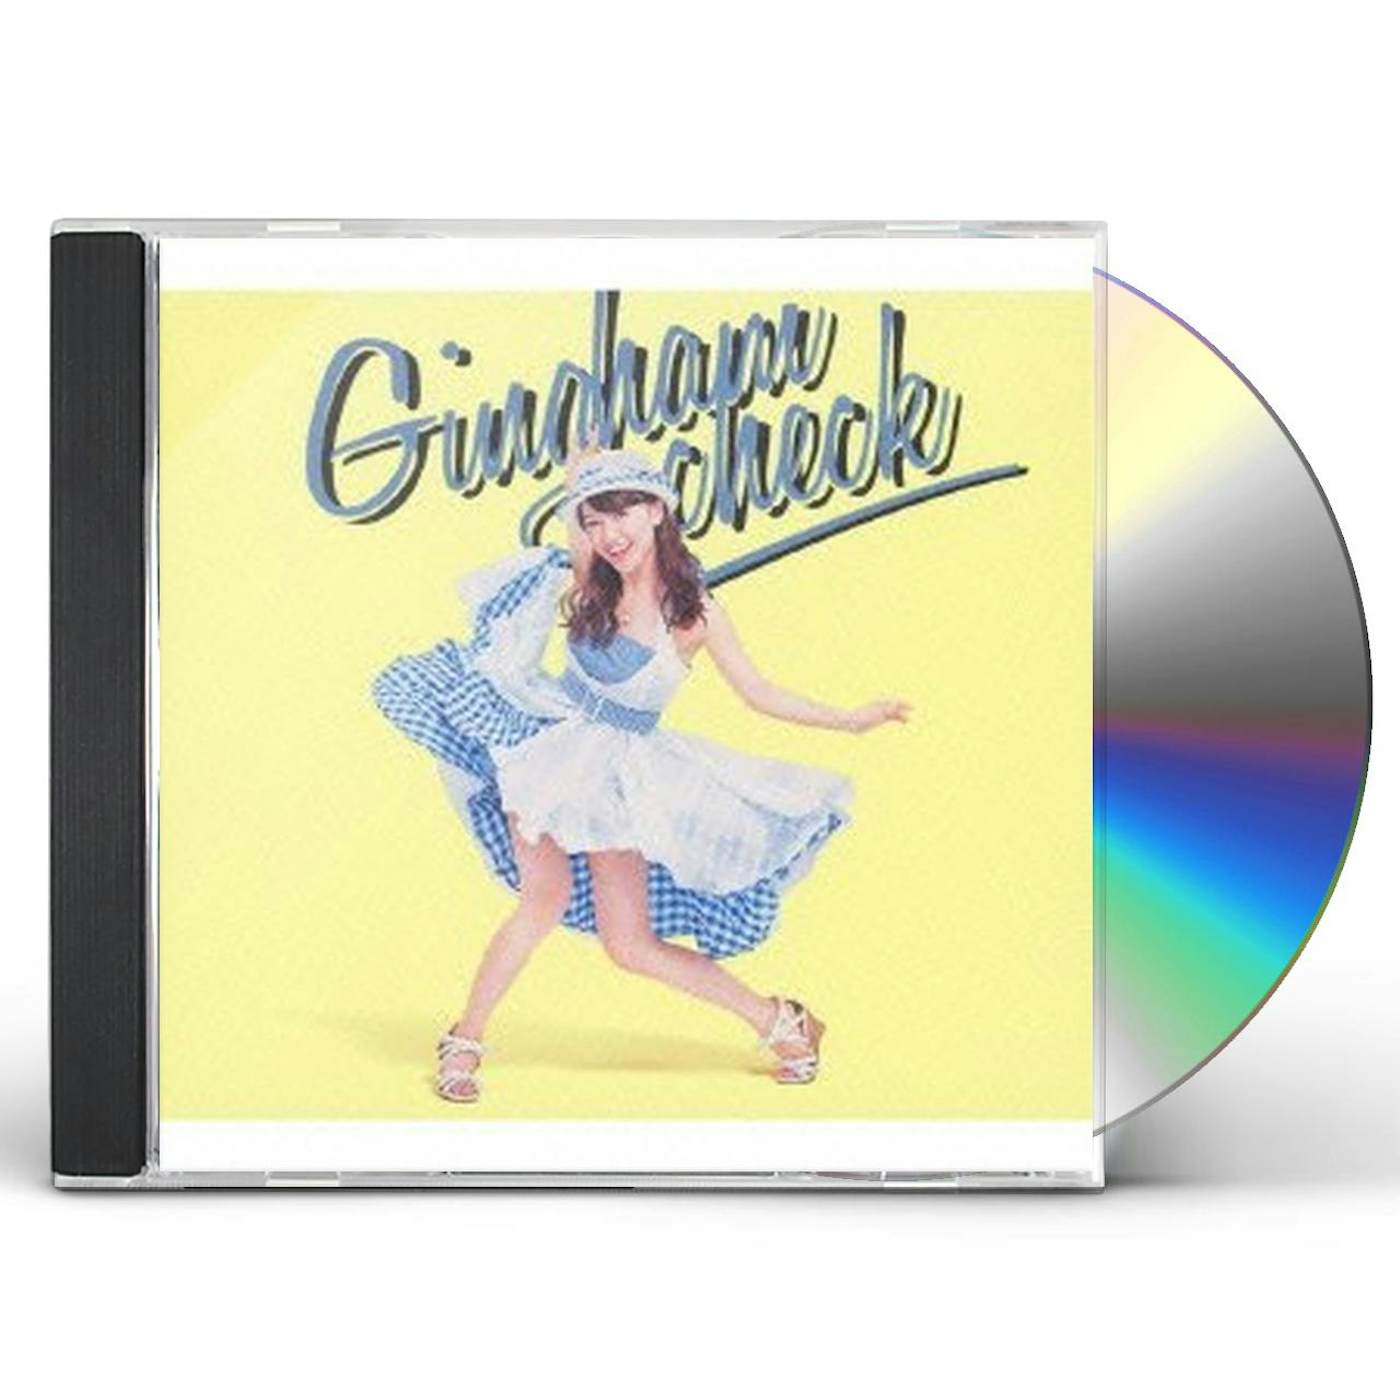 AKB48 GINGHAM CHECK CD